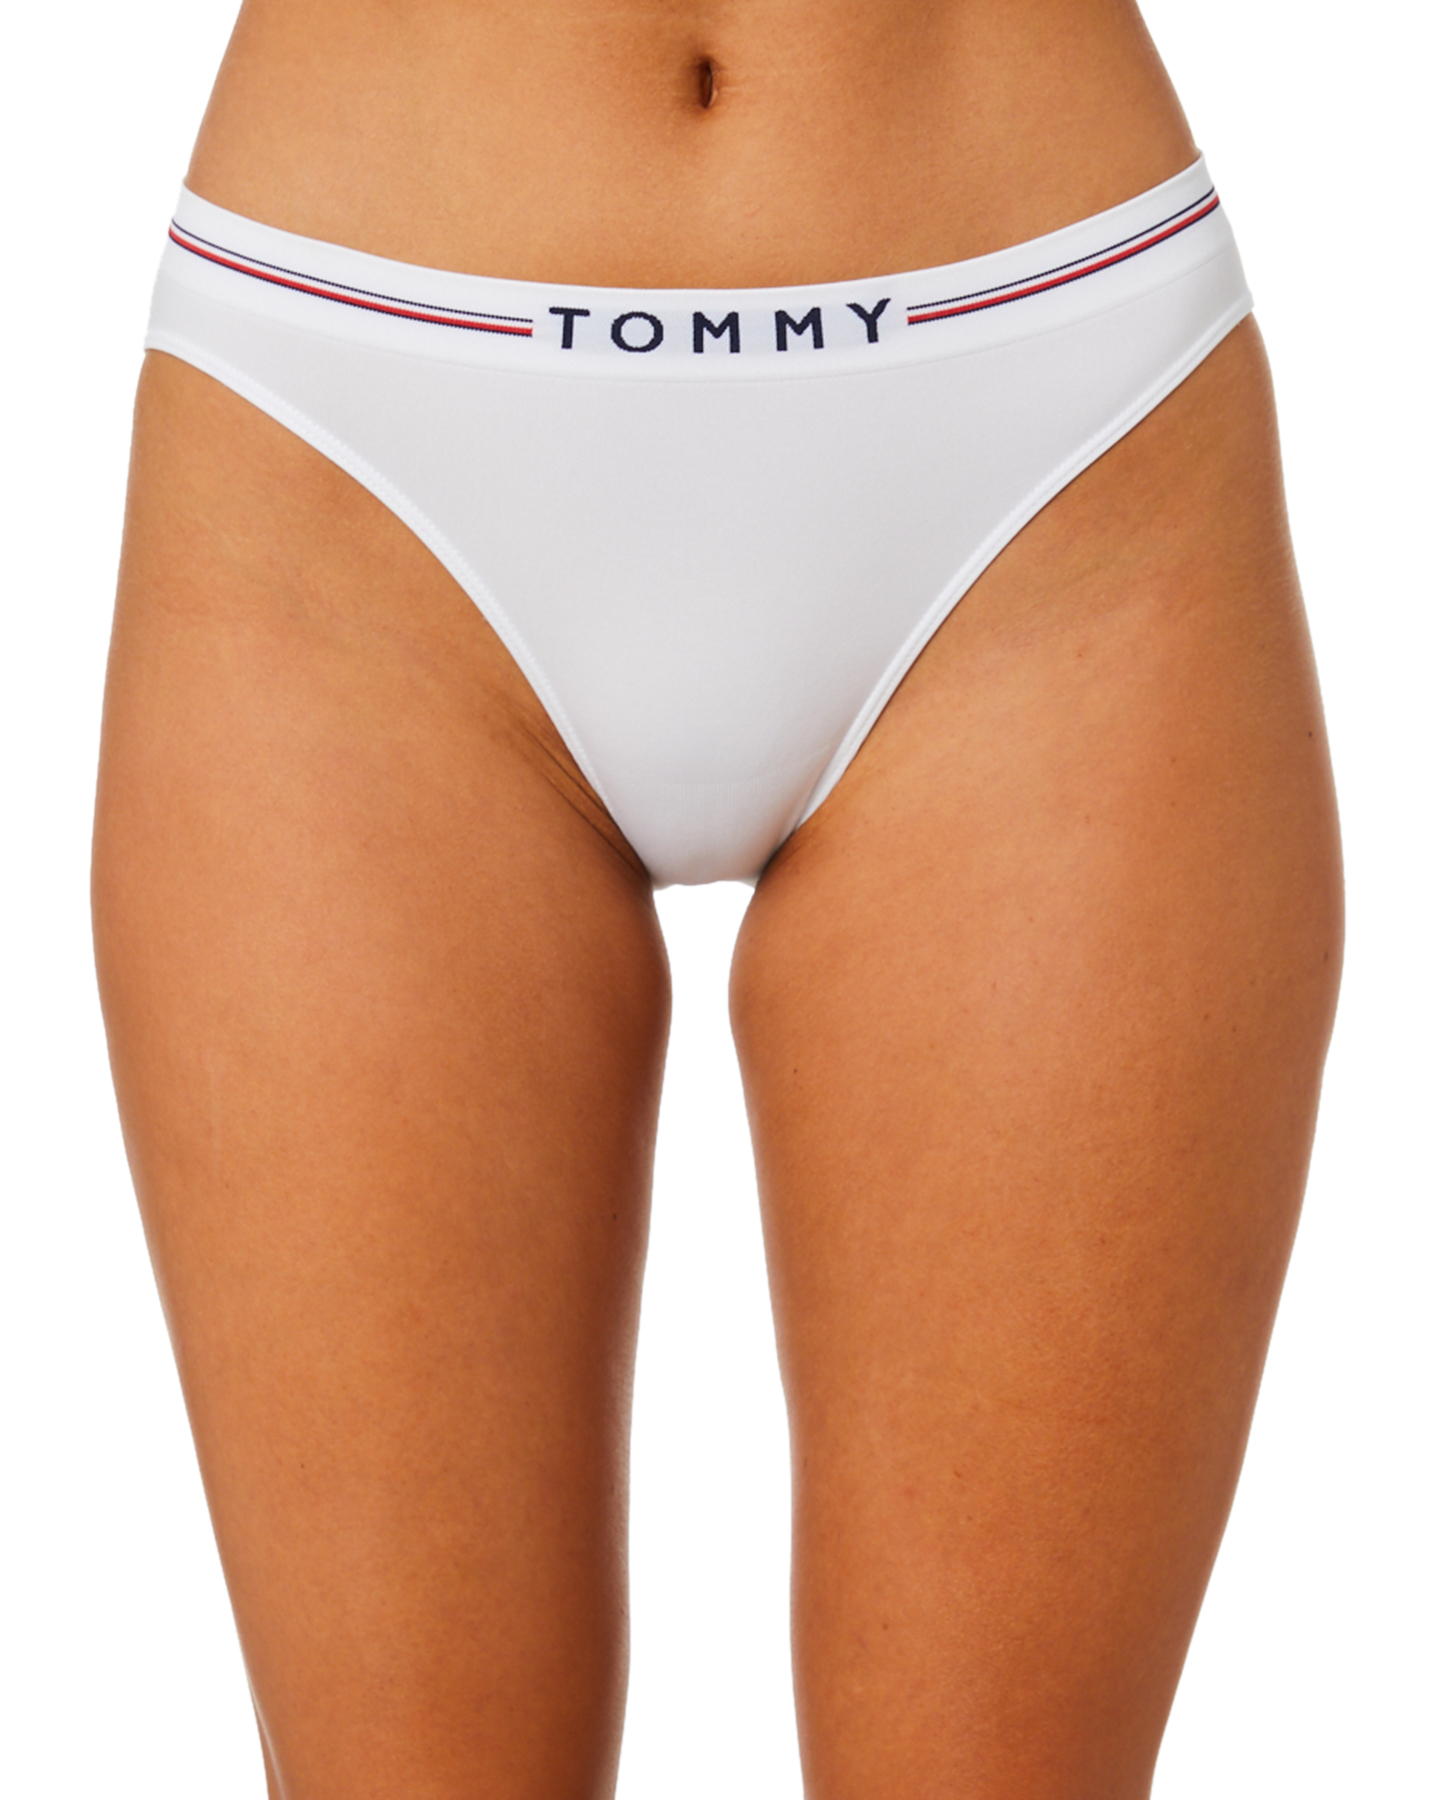 tommy hilfiger women's underwear australia